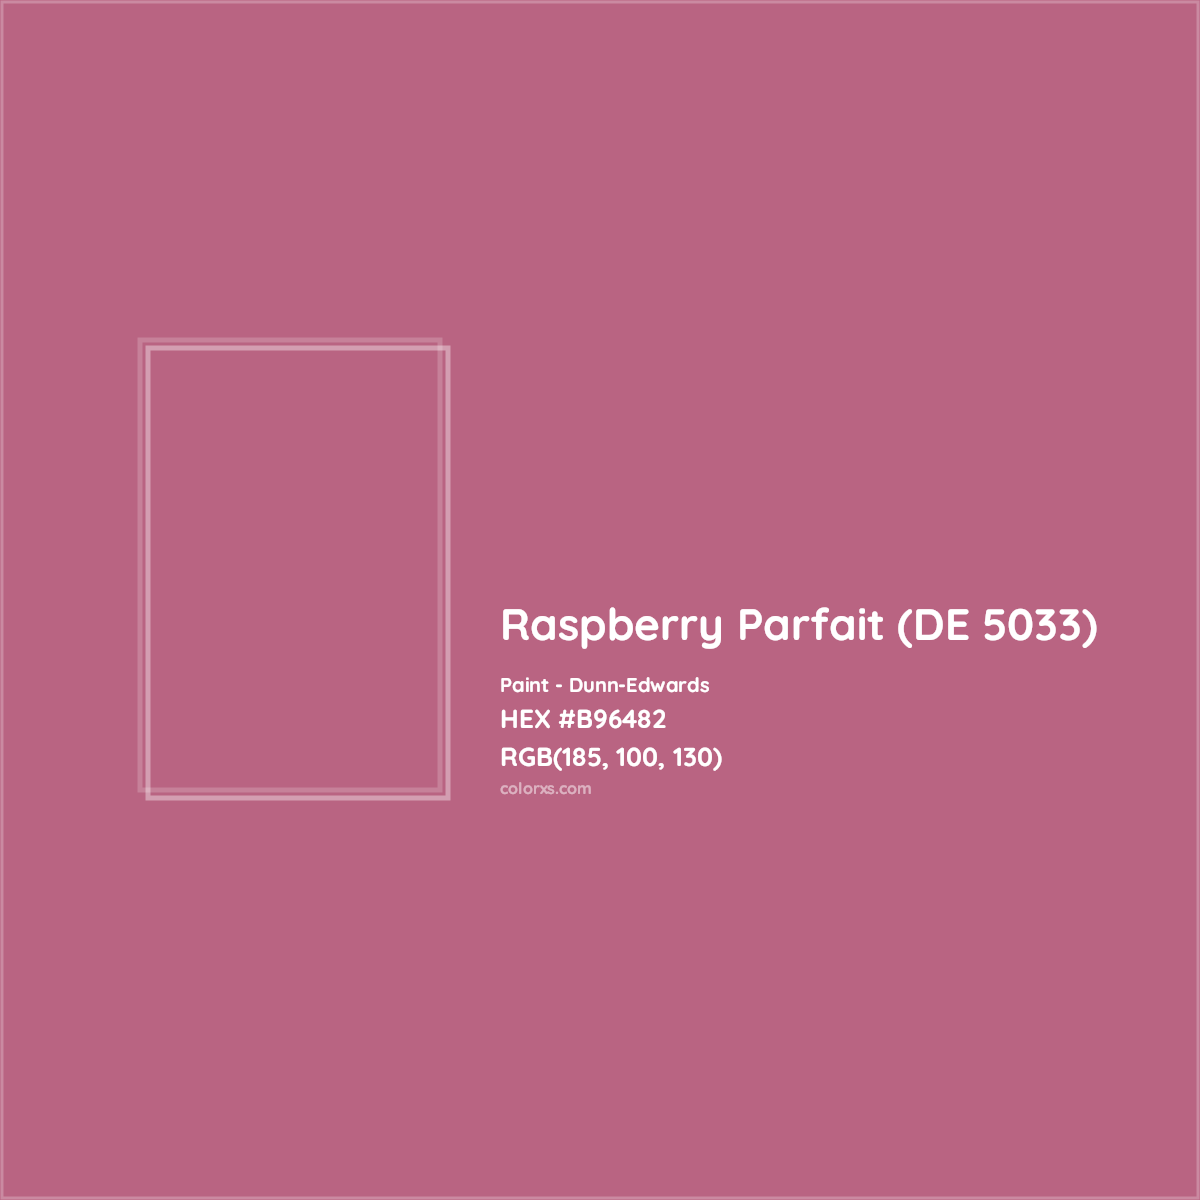 HEX #B96482 Raspberry Parfait (DE 5033) Paint Dunn-Edwards - Color Code